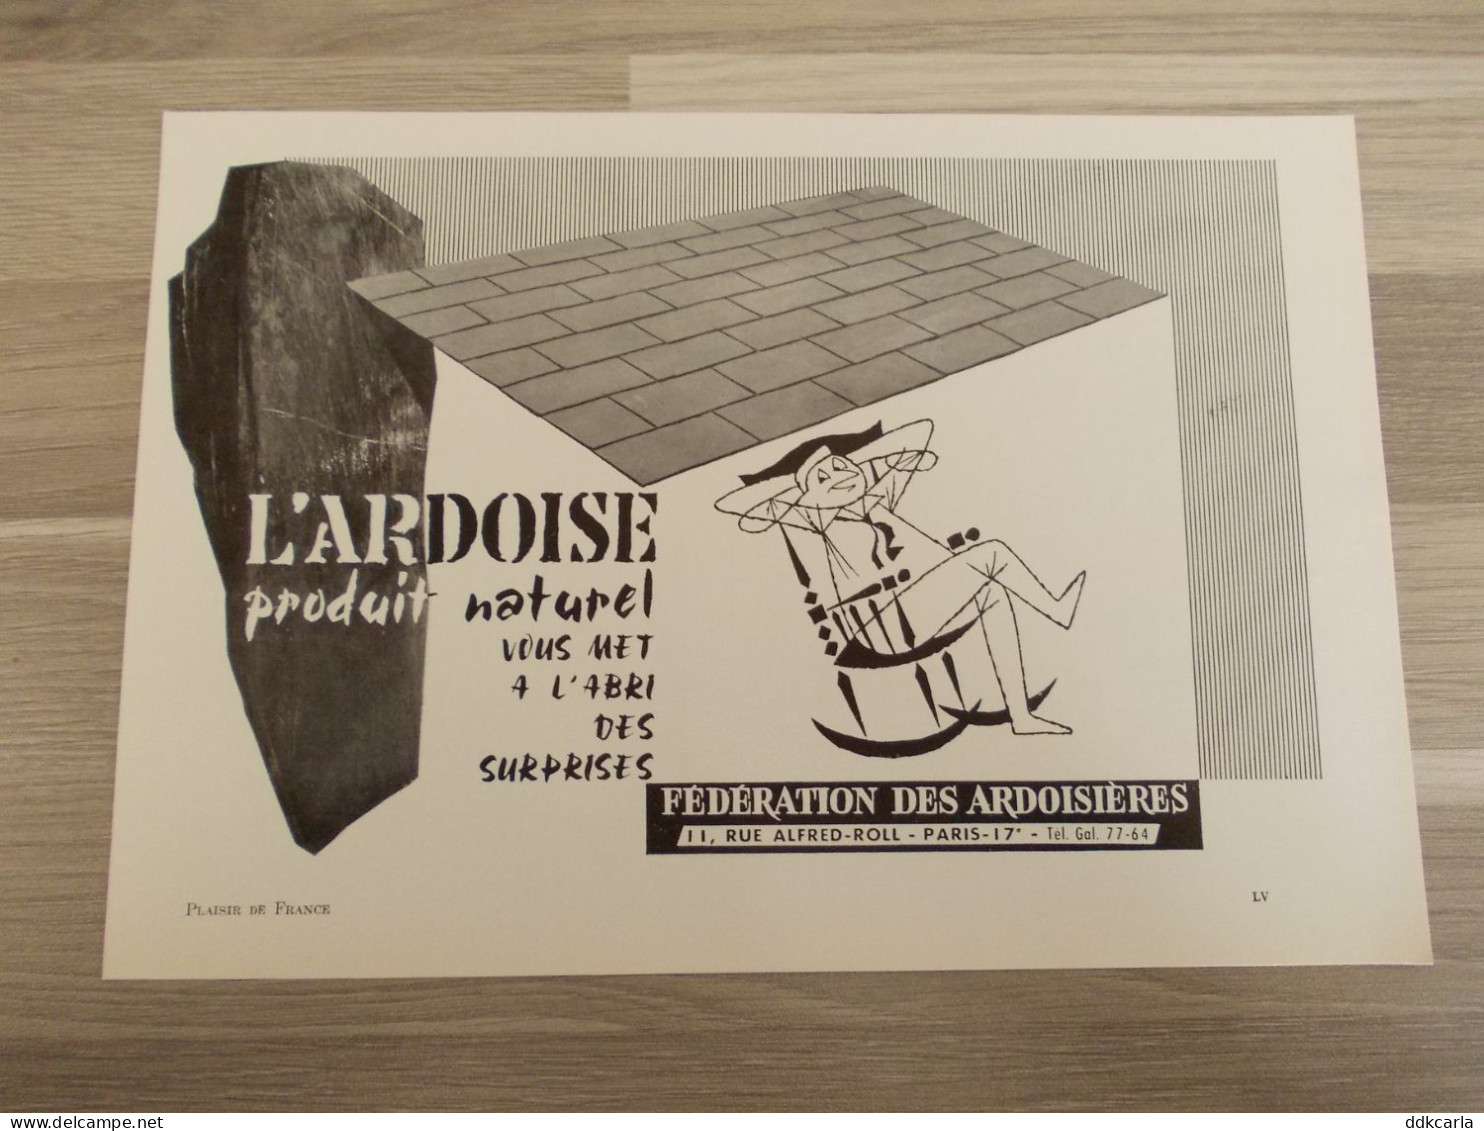 Reclame Advertentie Uit Oud Tijdschrift 1957 - L'Ardoise Produit Naturel - Advertising